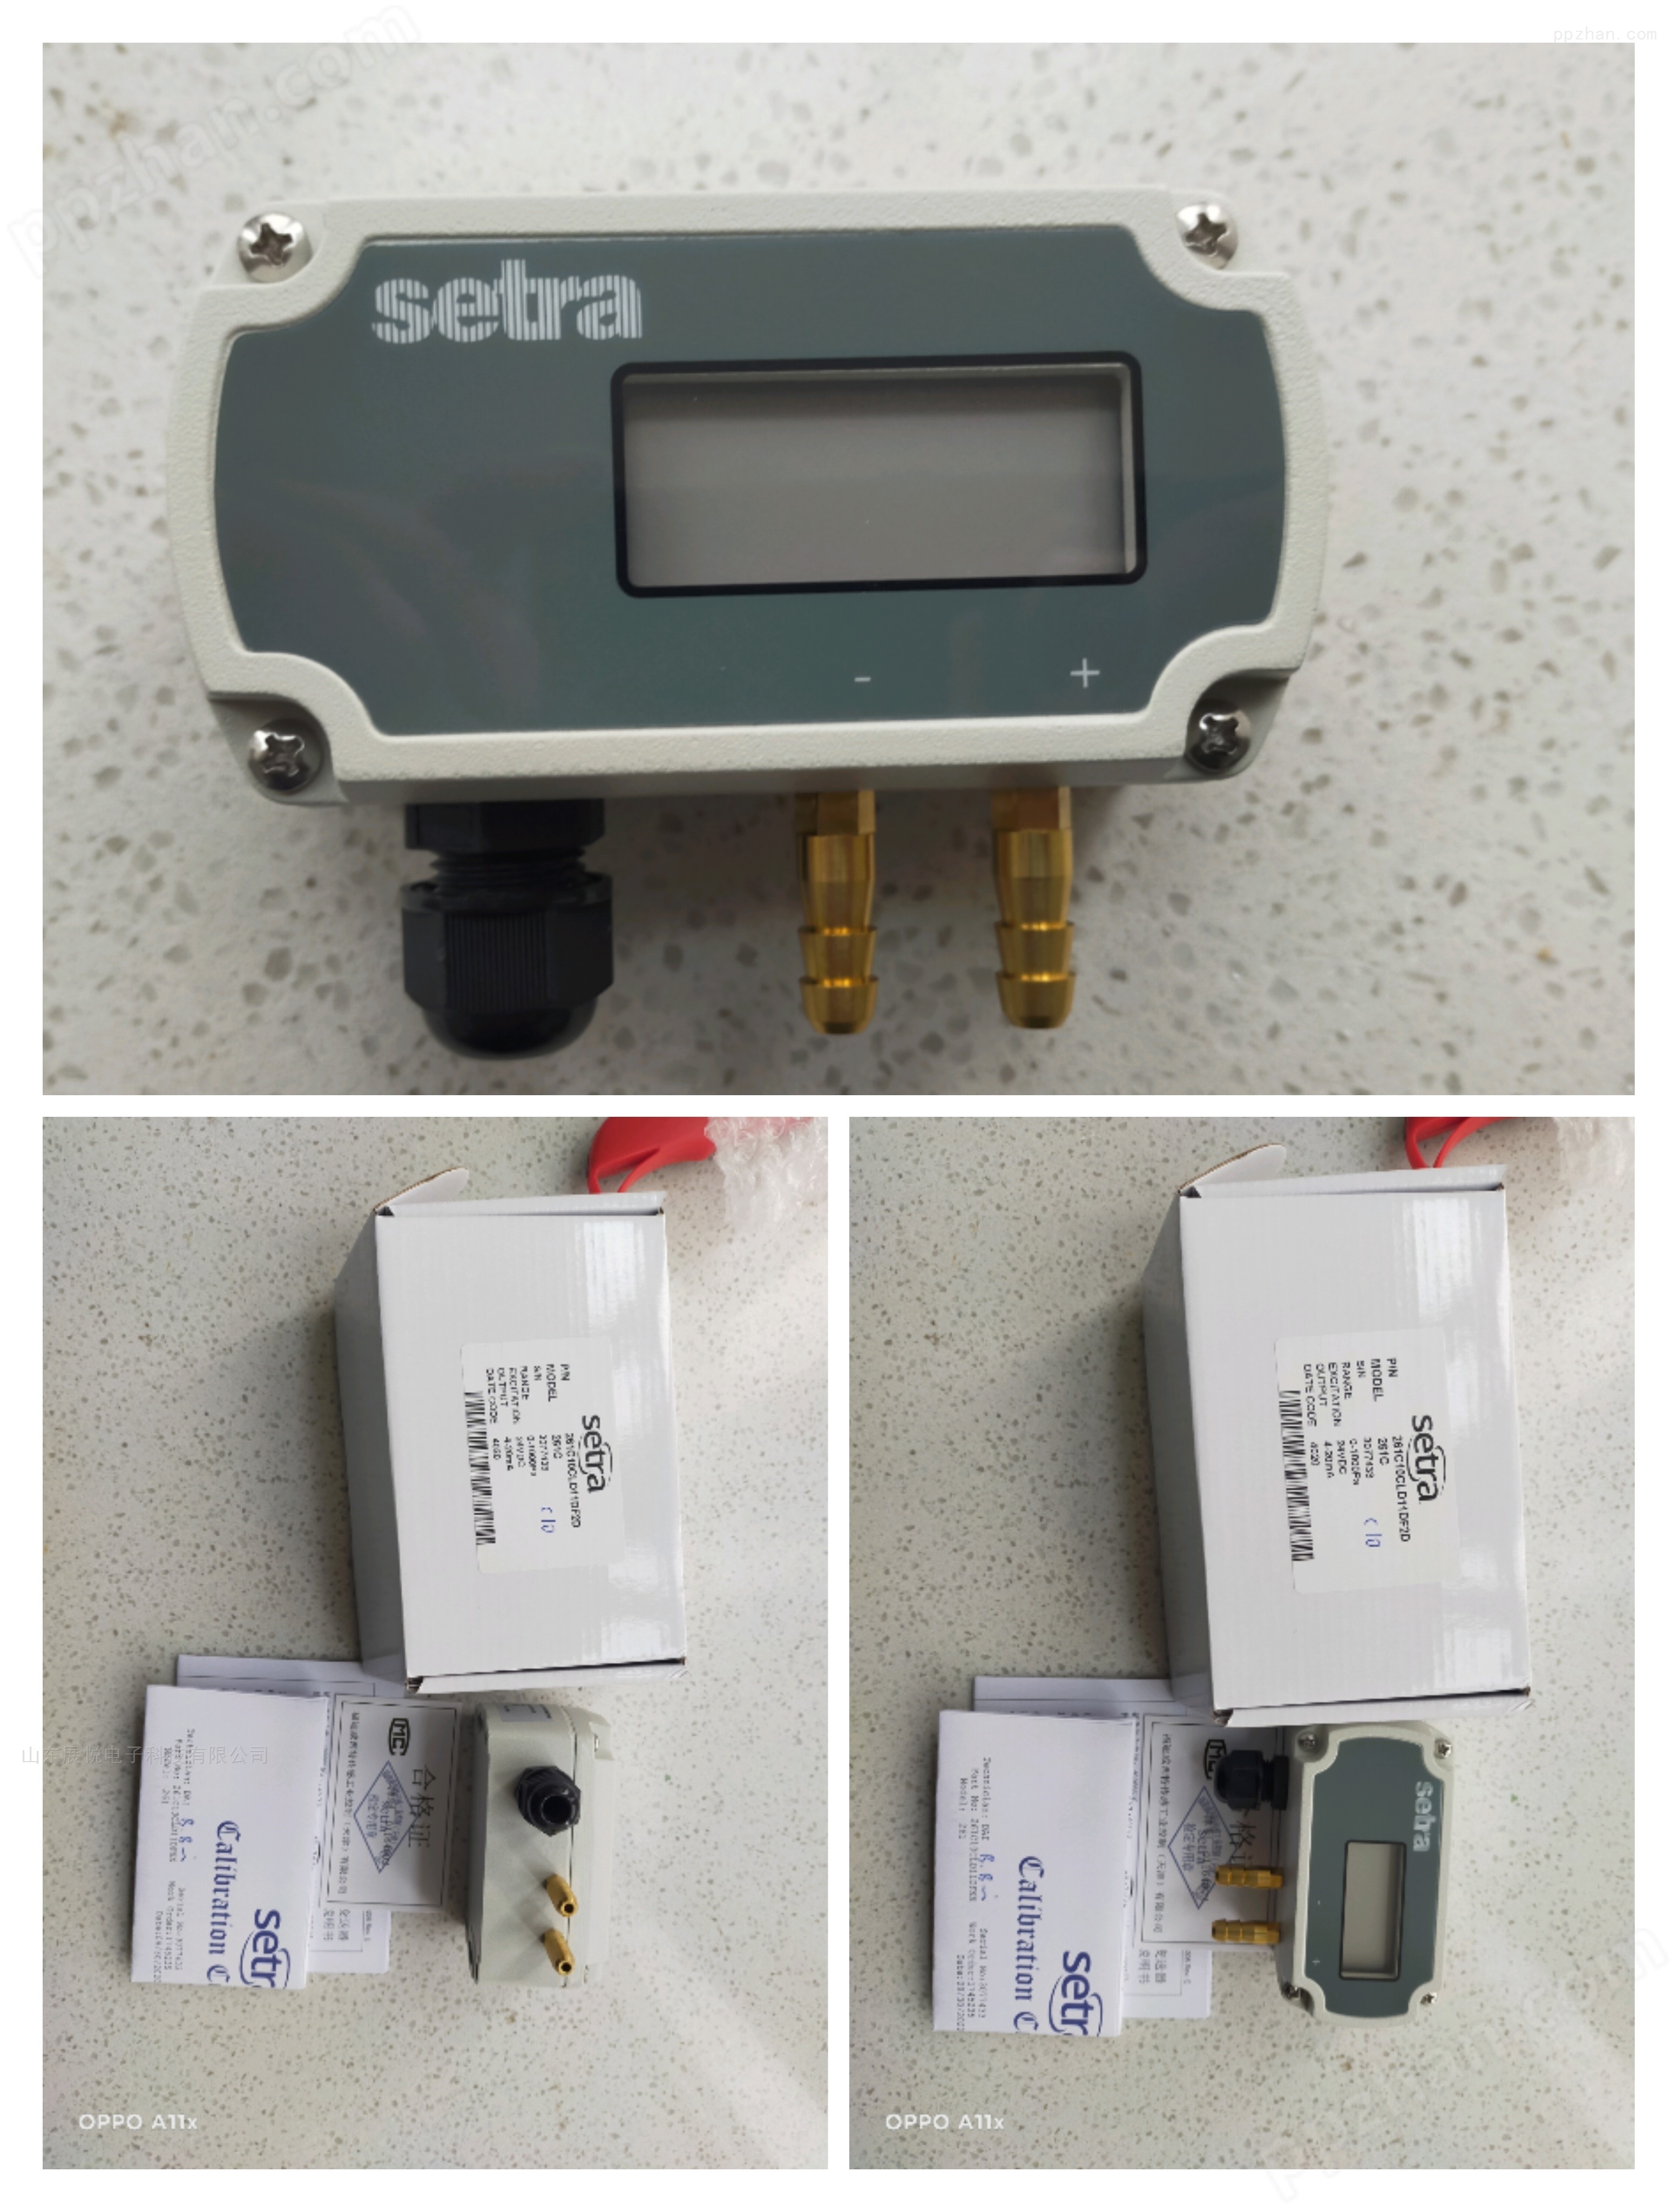 西特261C微差压传感器Setra 261C常用型号